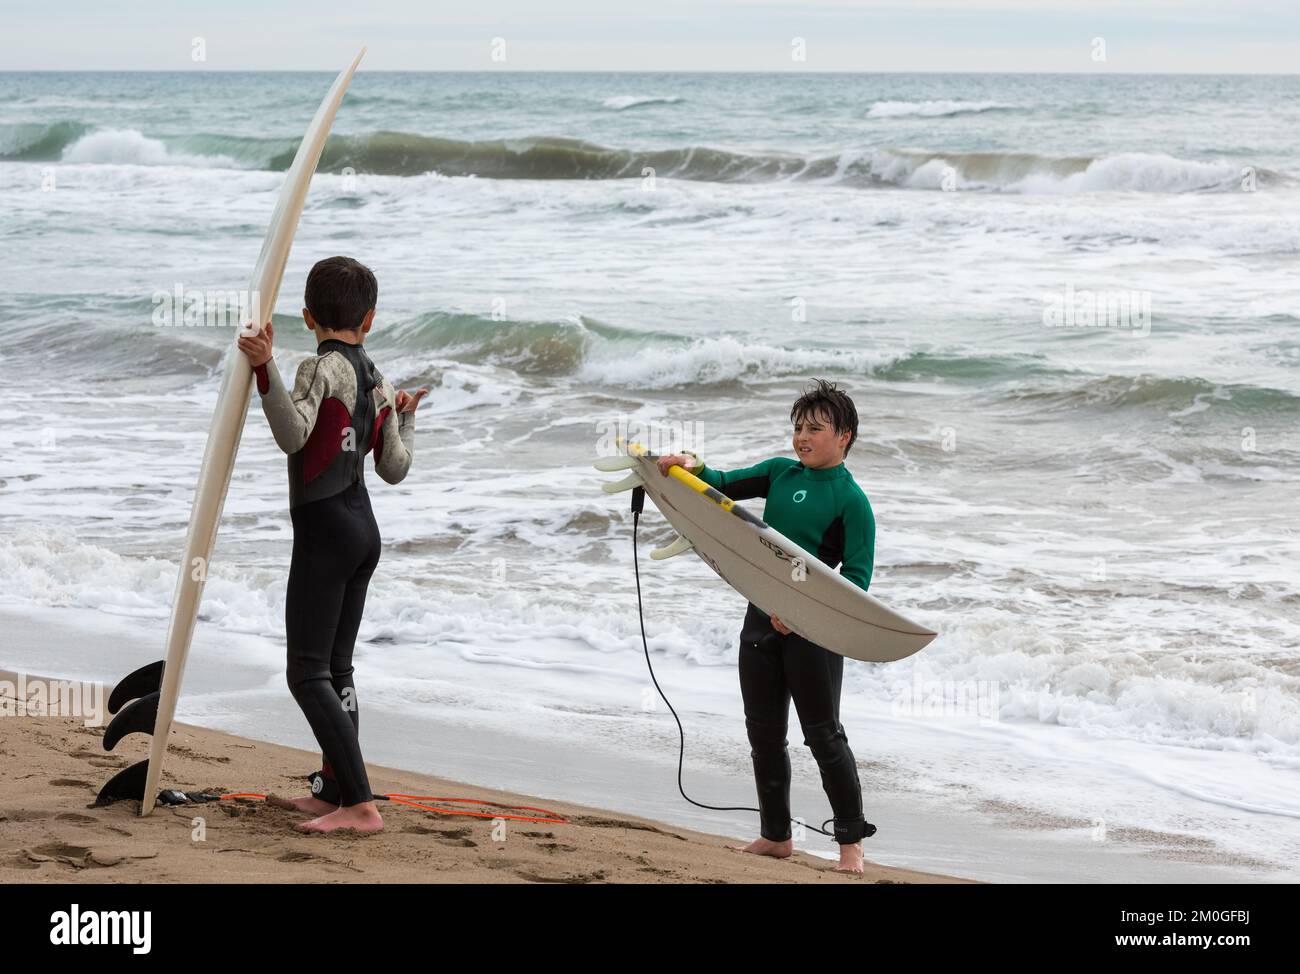 Castelldefels, Barcellona, Spagna - 9 gennaio 2016: Due amici tra i dieci e gli undici anni con le loro tavole da surf godendo di una nuvolosa giornata invernale, re Foto Stock